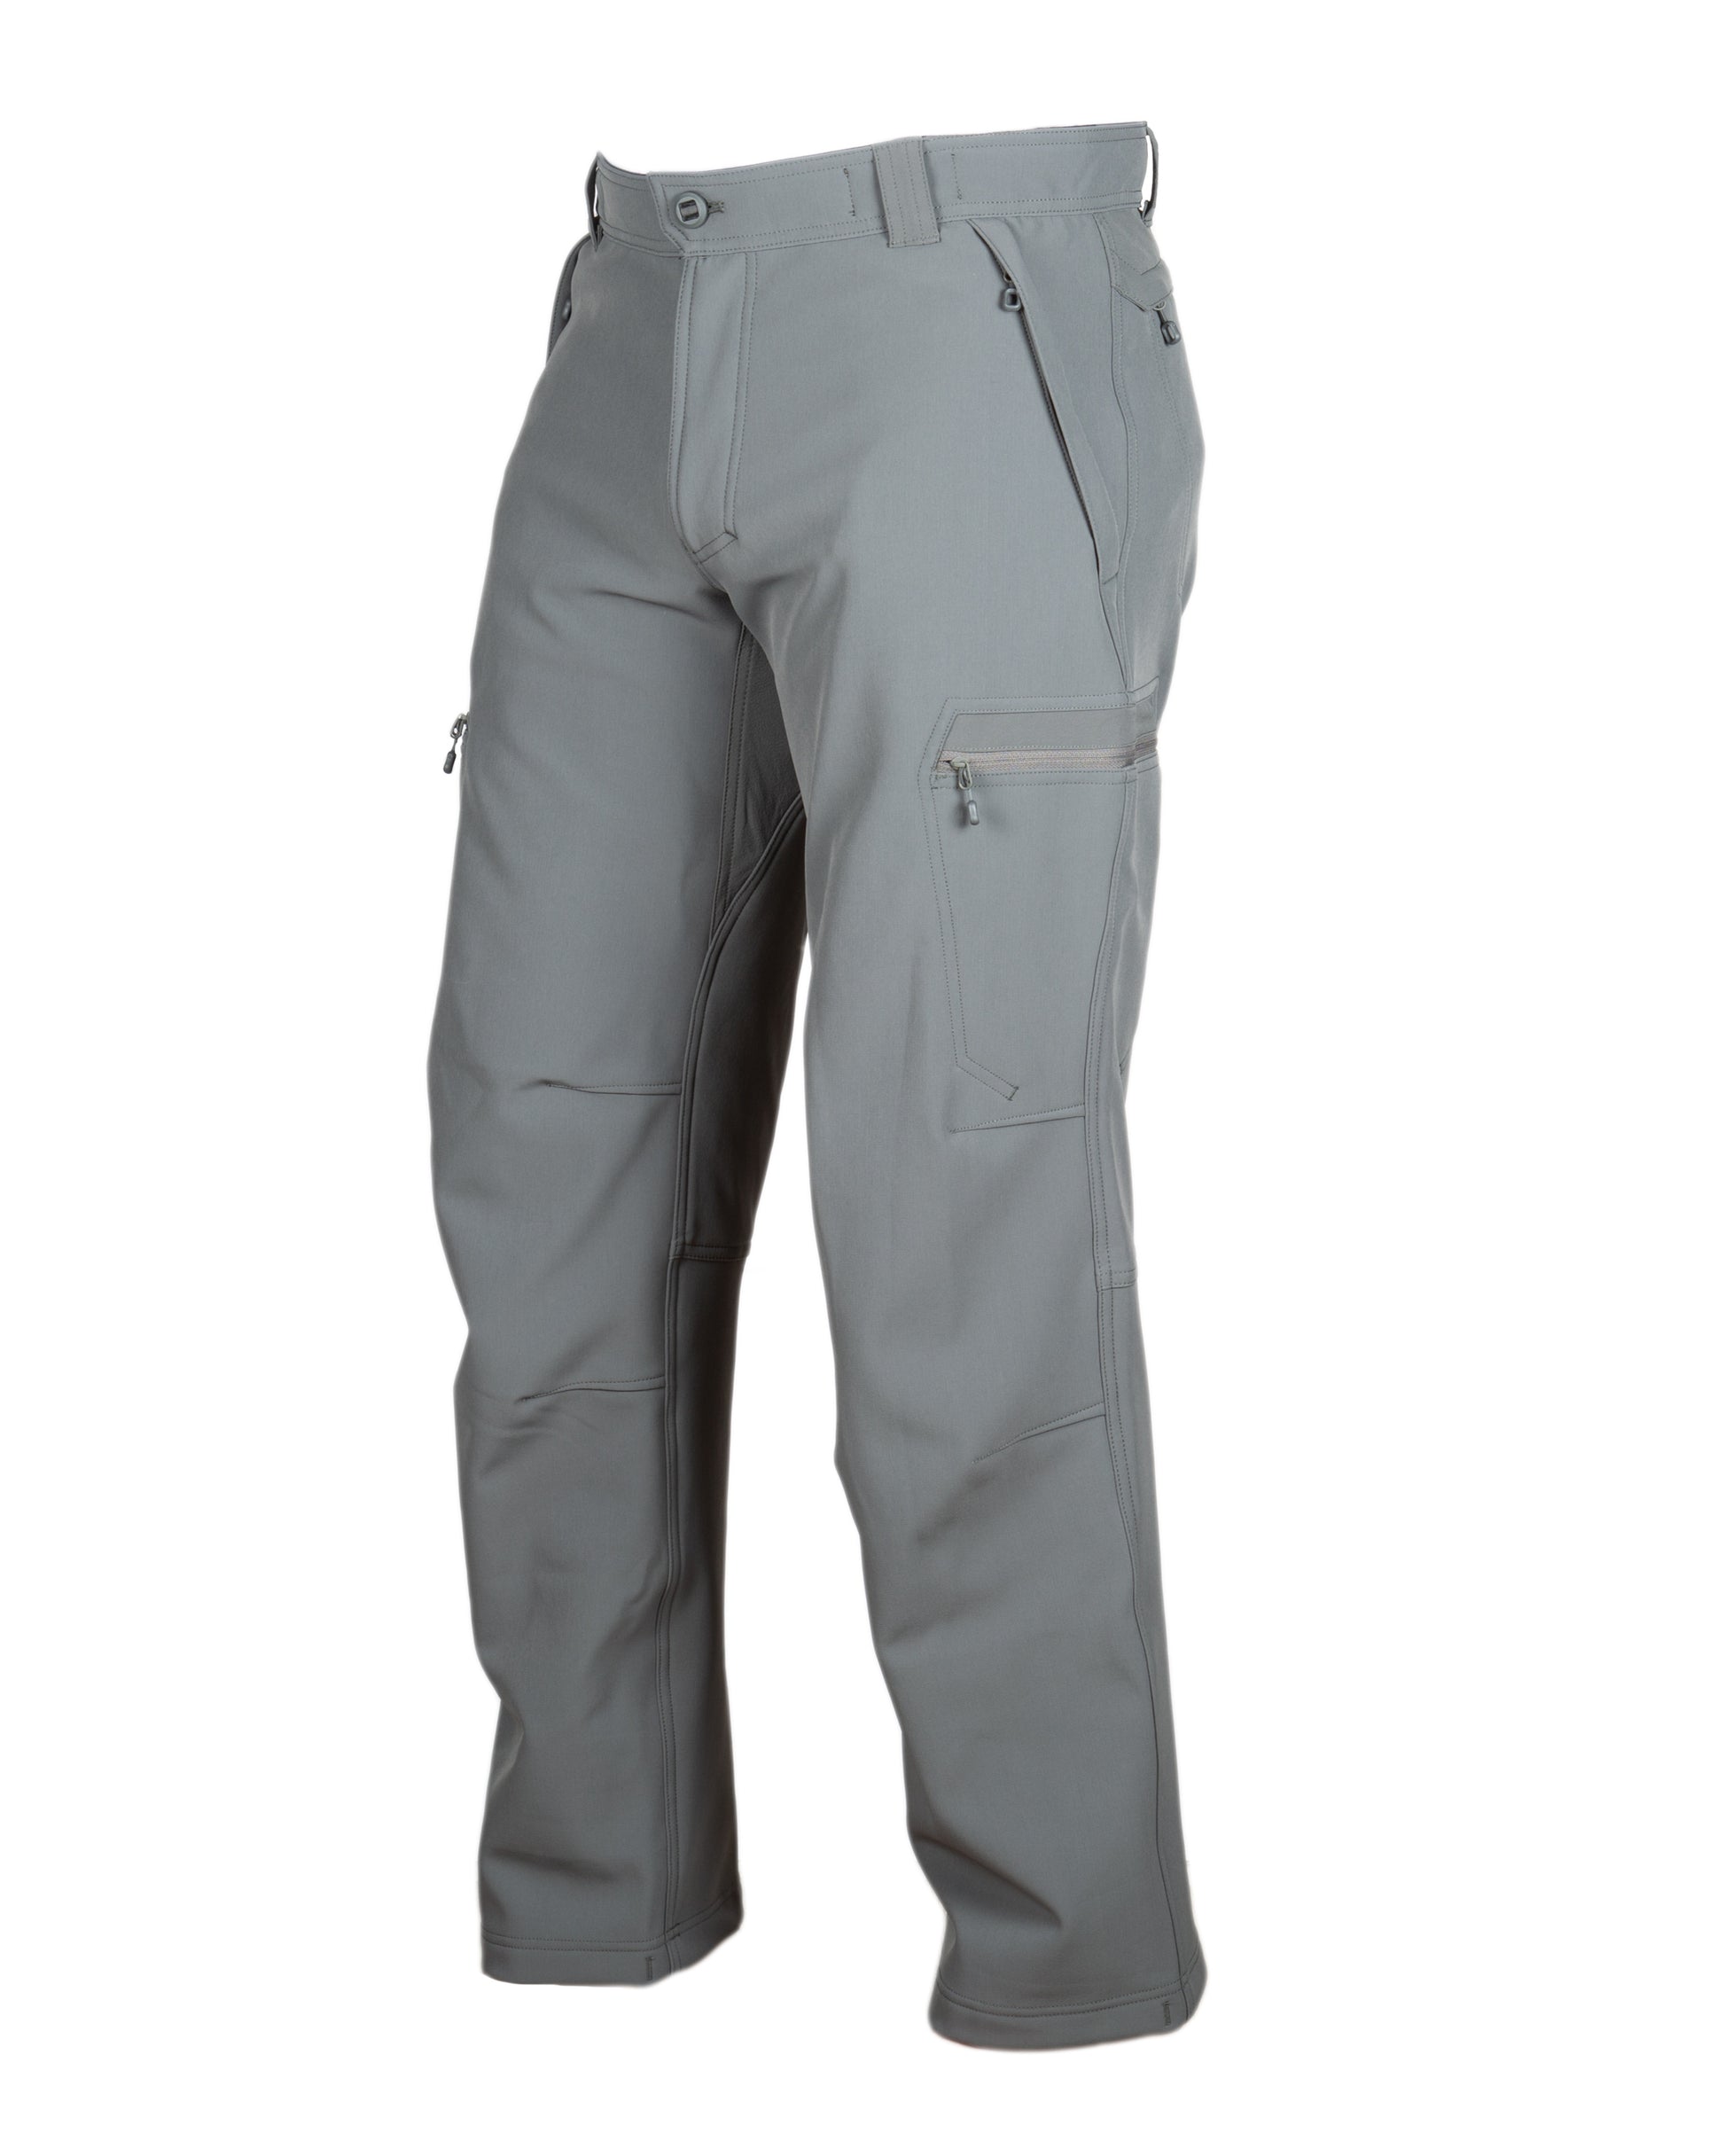 L5 - Testa Softshell Pant - Beyond Clothing USA